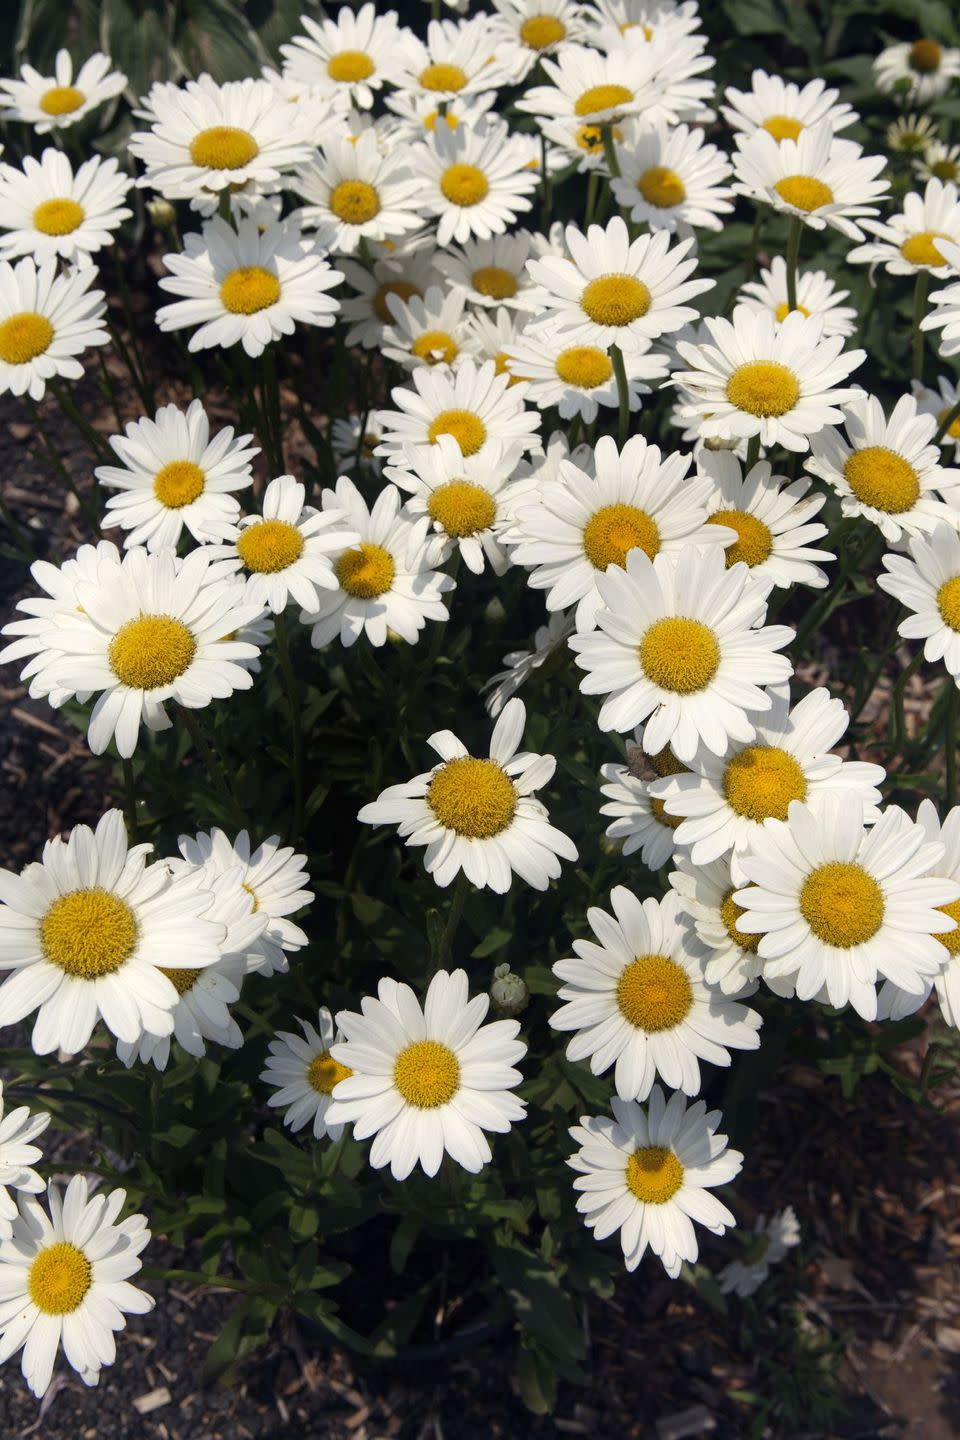 white shasta daisies in garden bed